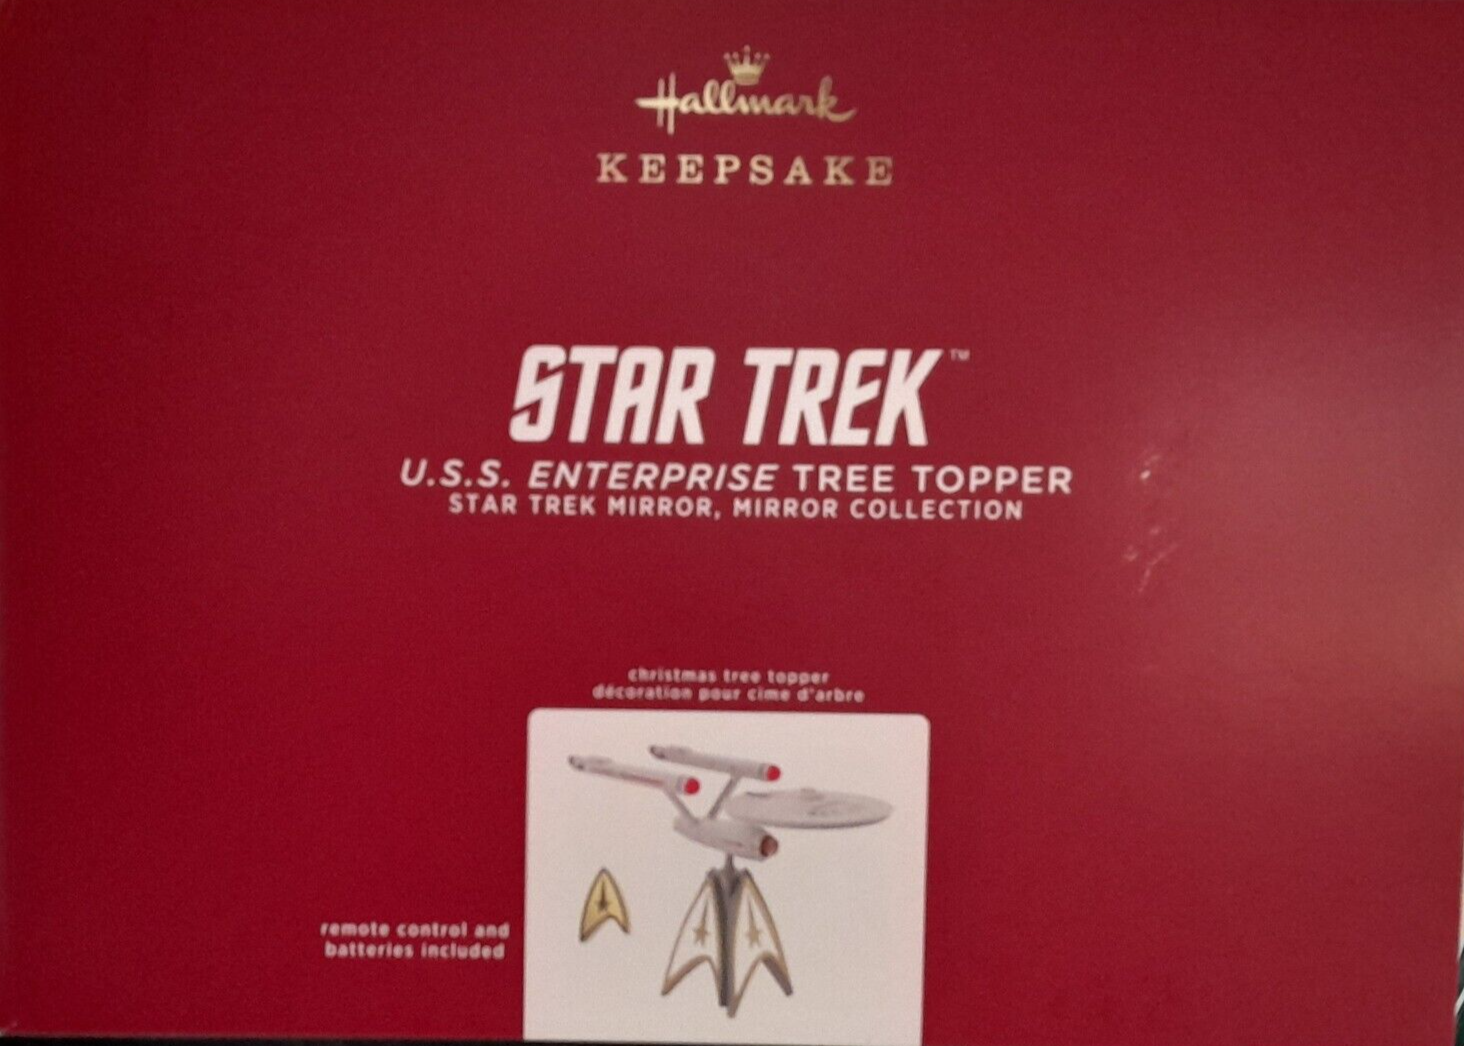 STAR TREK USS Enterprise Musical Topper w/ Sound & Light Show 2020 Art Crafted Hallmark - фотография #6